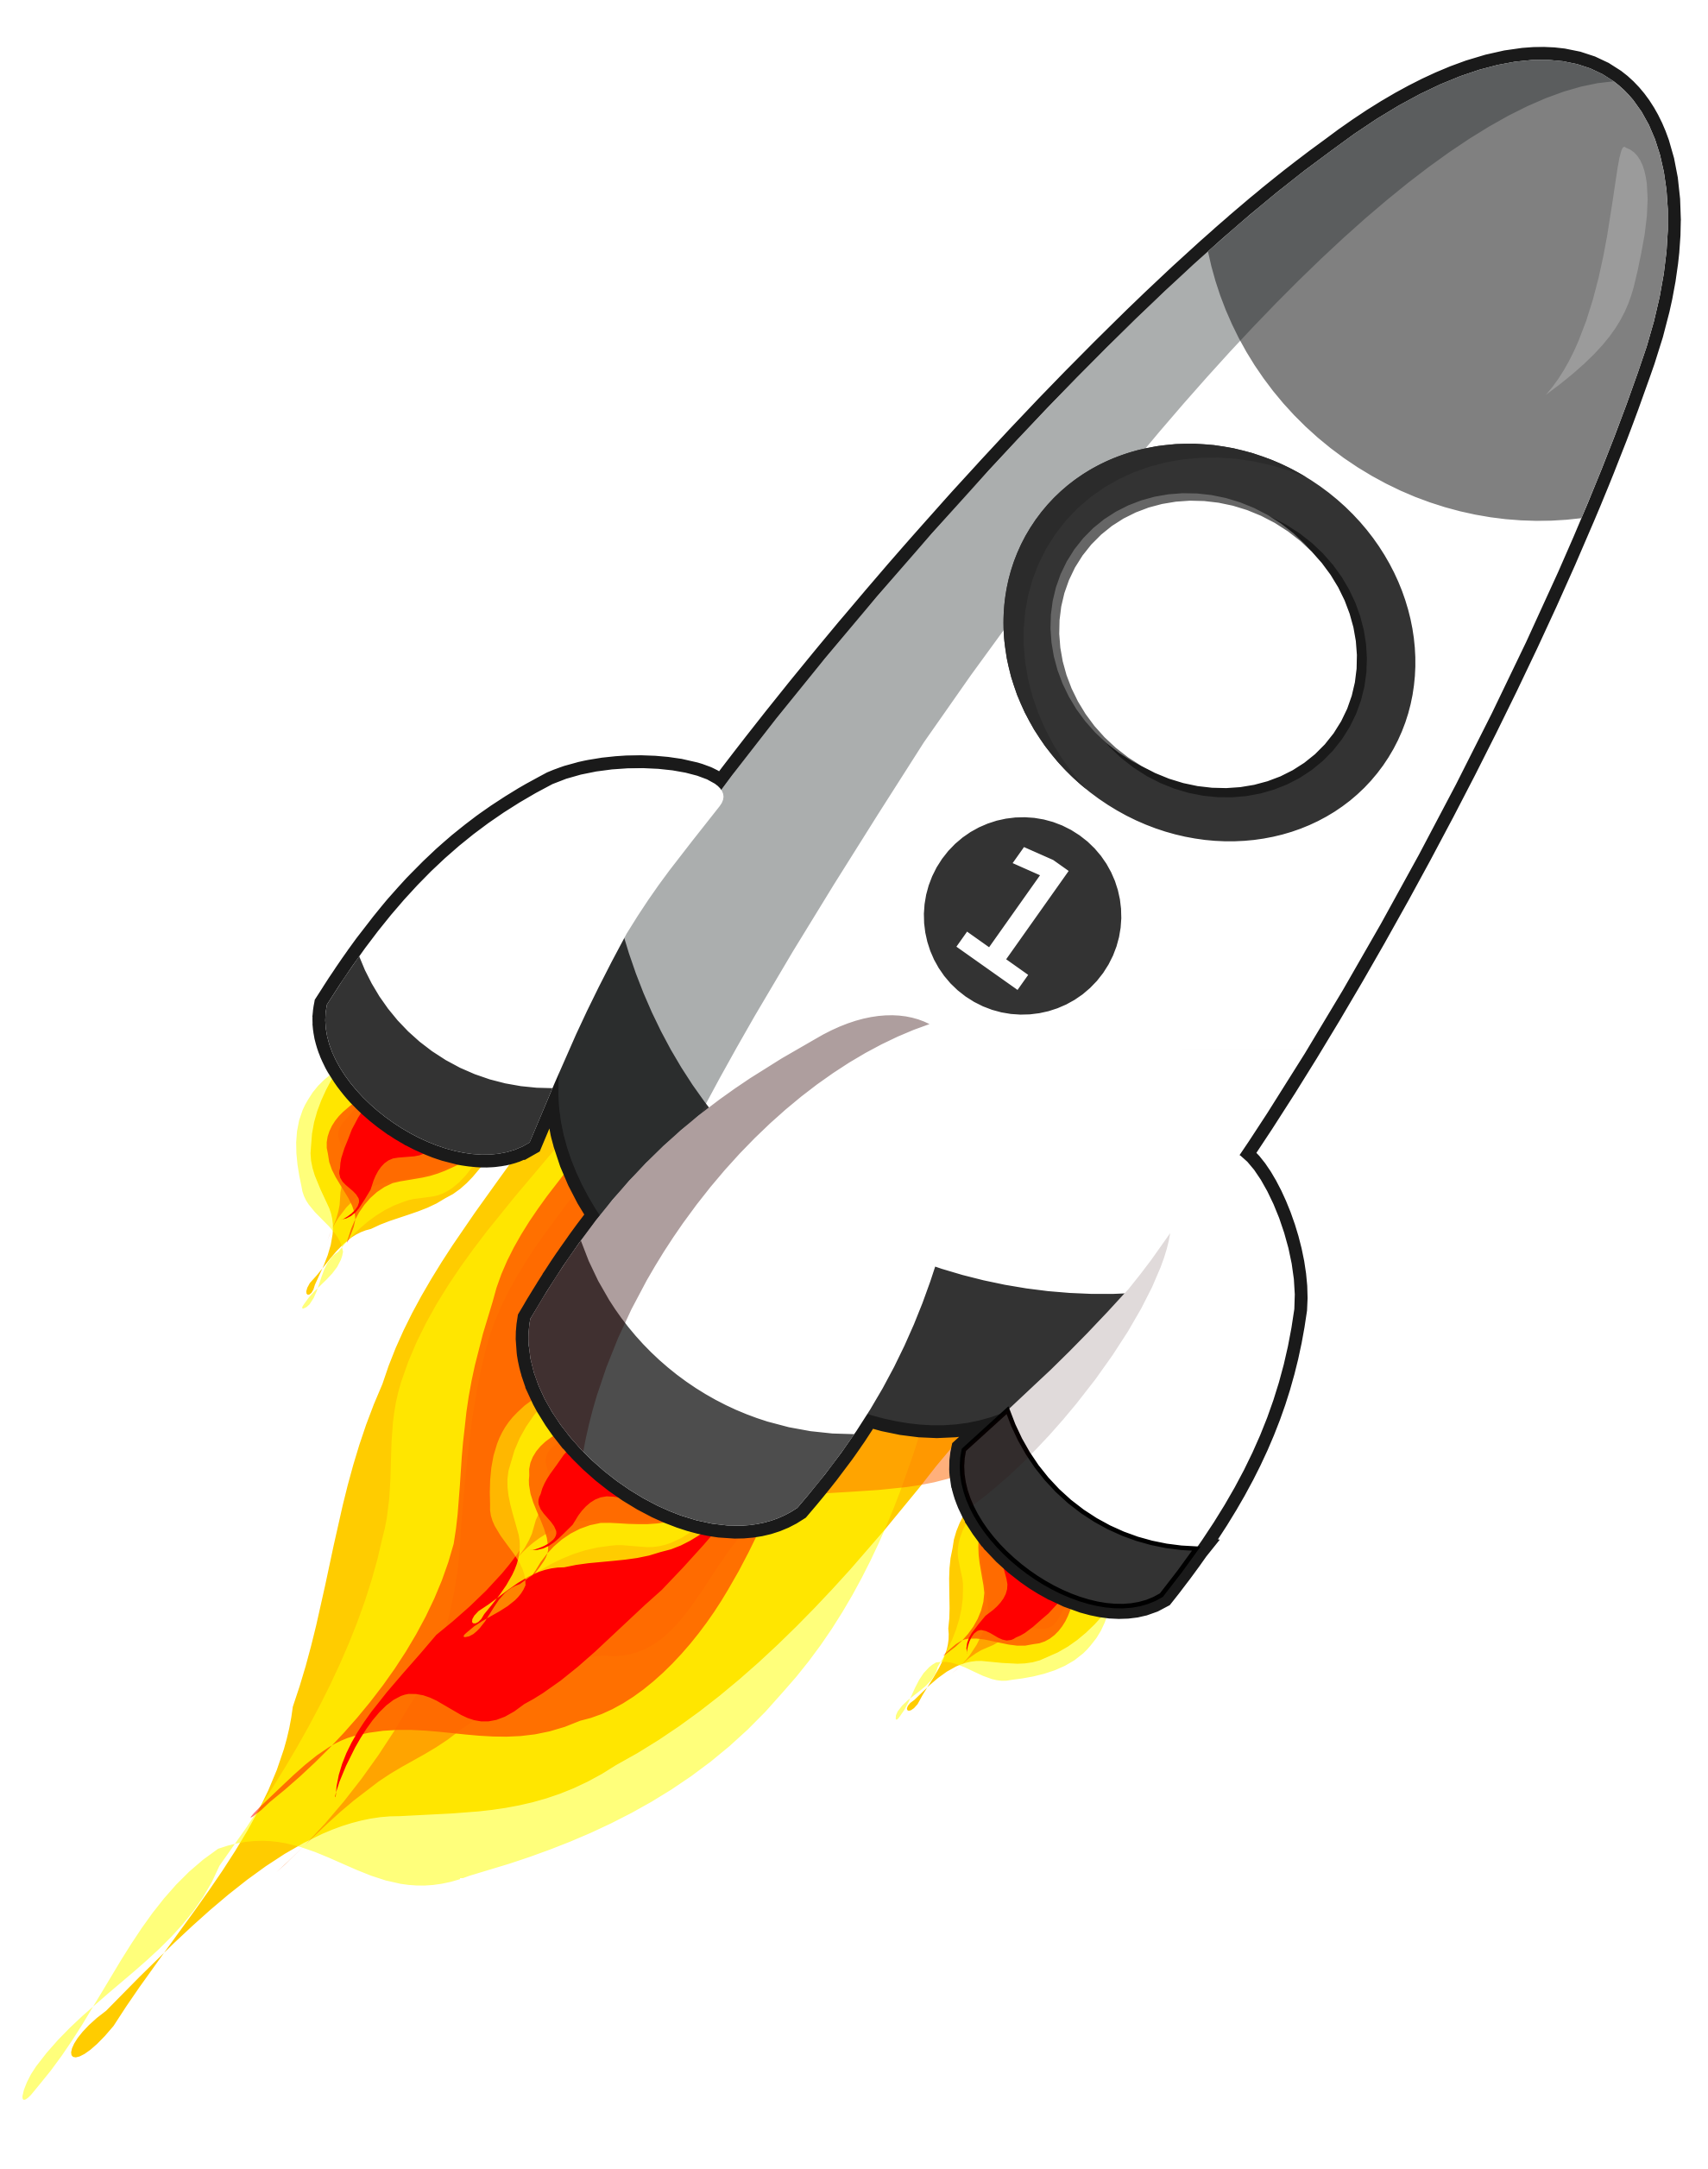 Cartoon Rocket Images | Free Download Clip Art | Free Clip Art ...